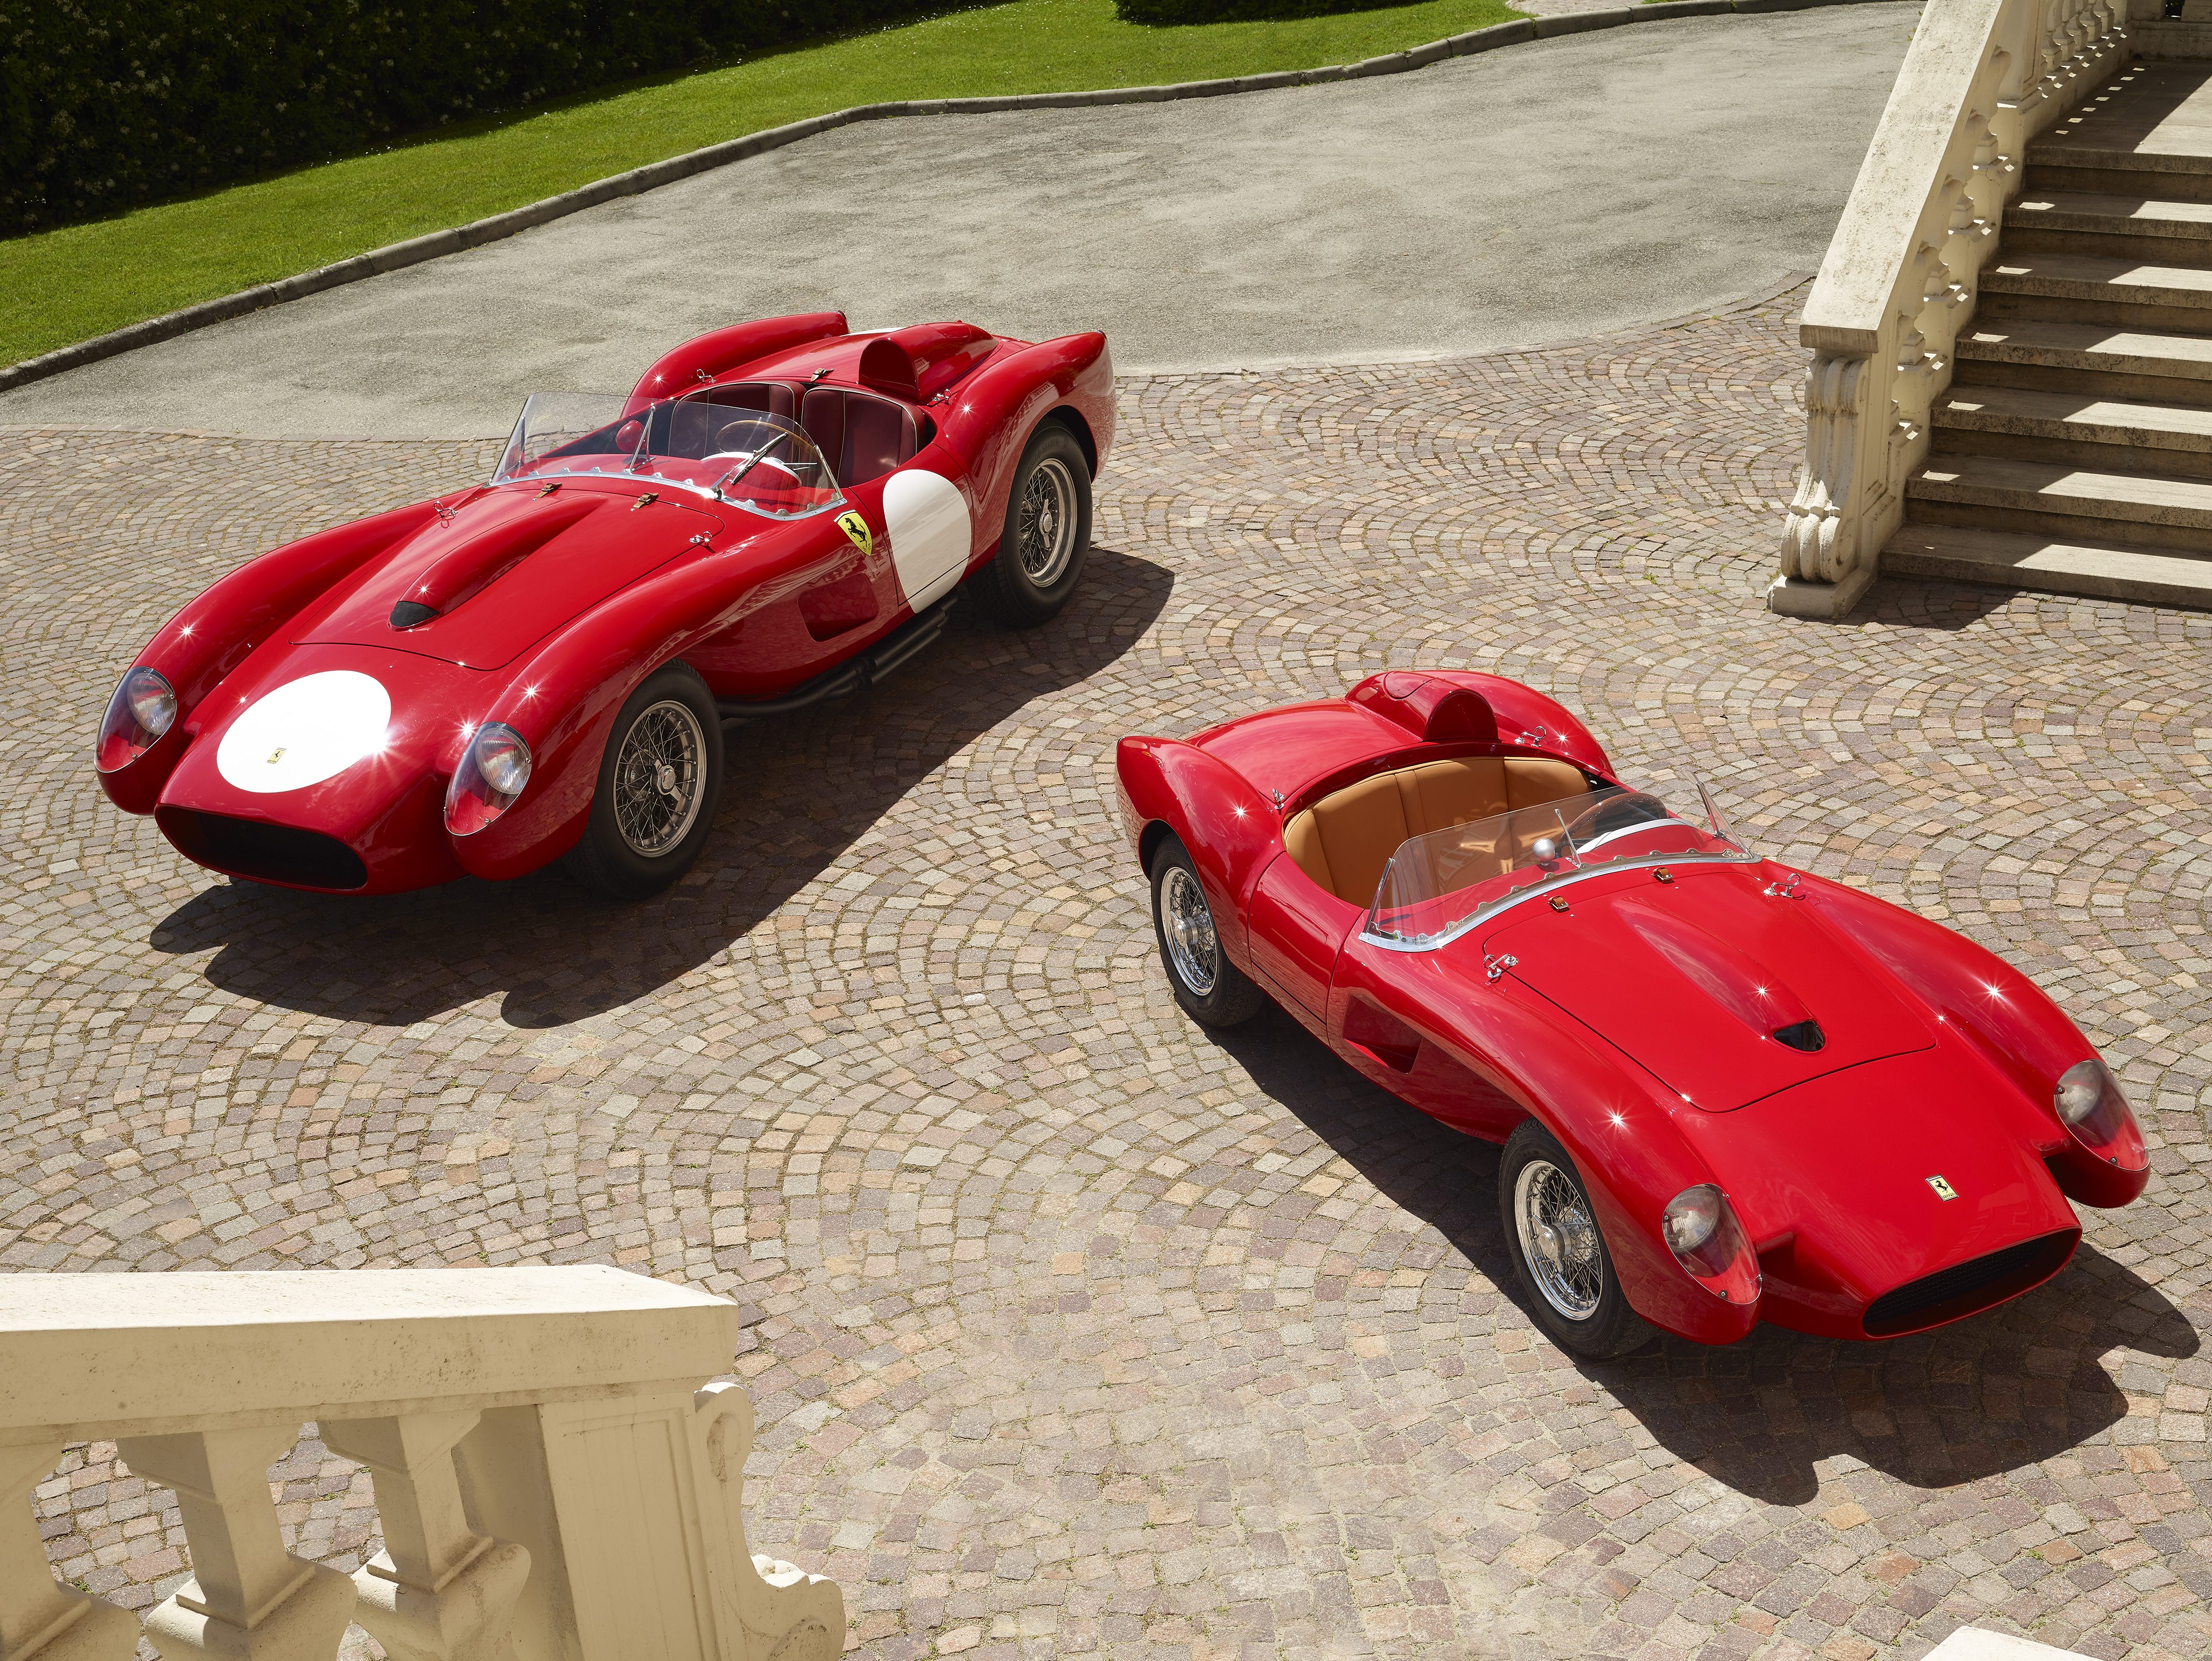 Junto al Ferrari 250 Testa Rossa real se encuentra el Ferrari Testa Rossa J de Little Car Company